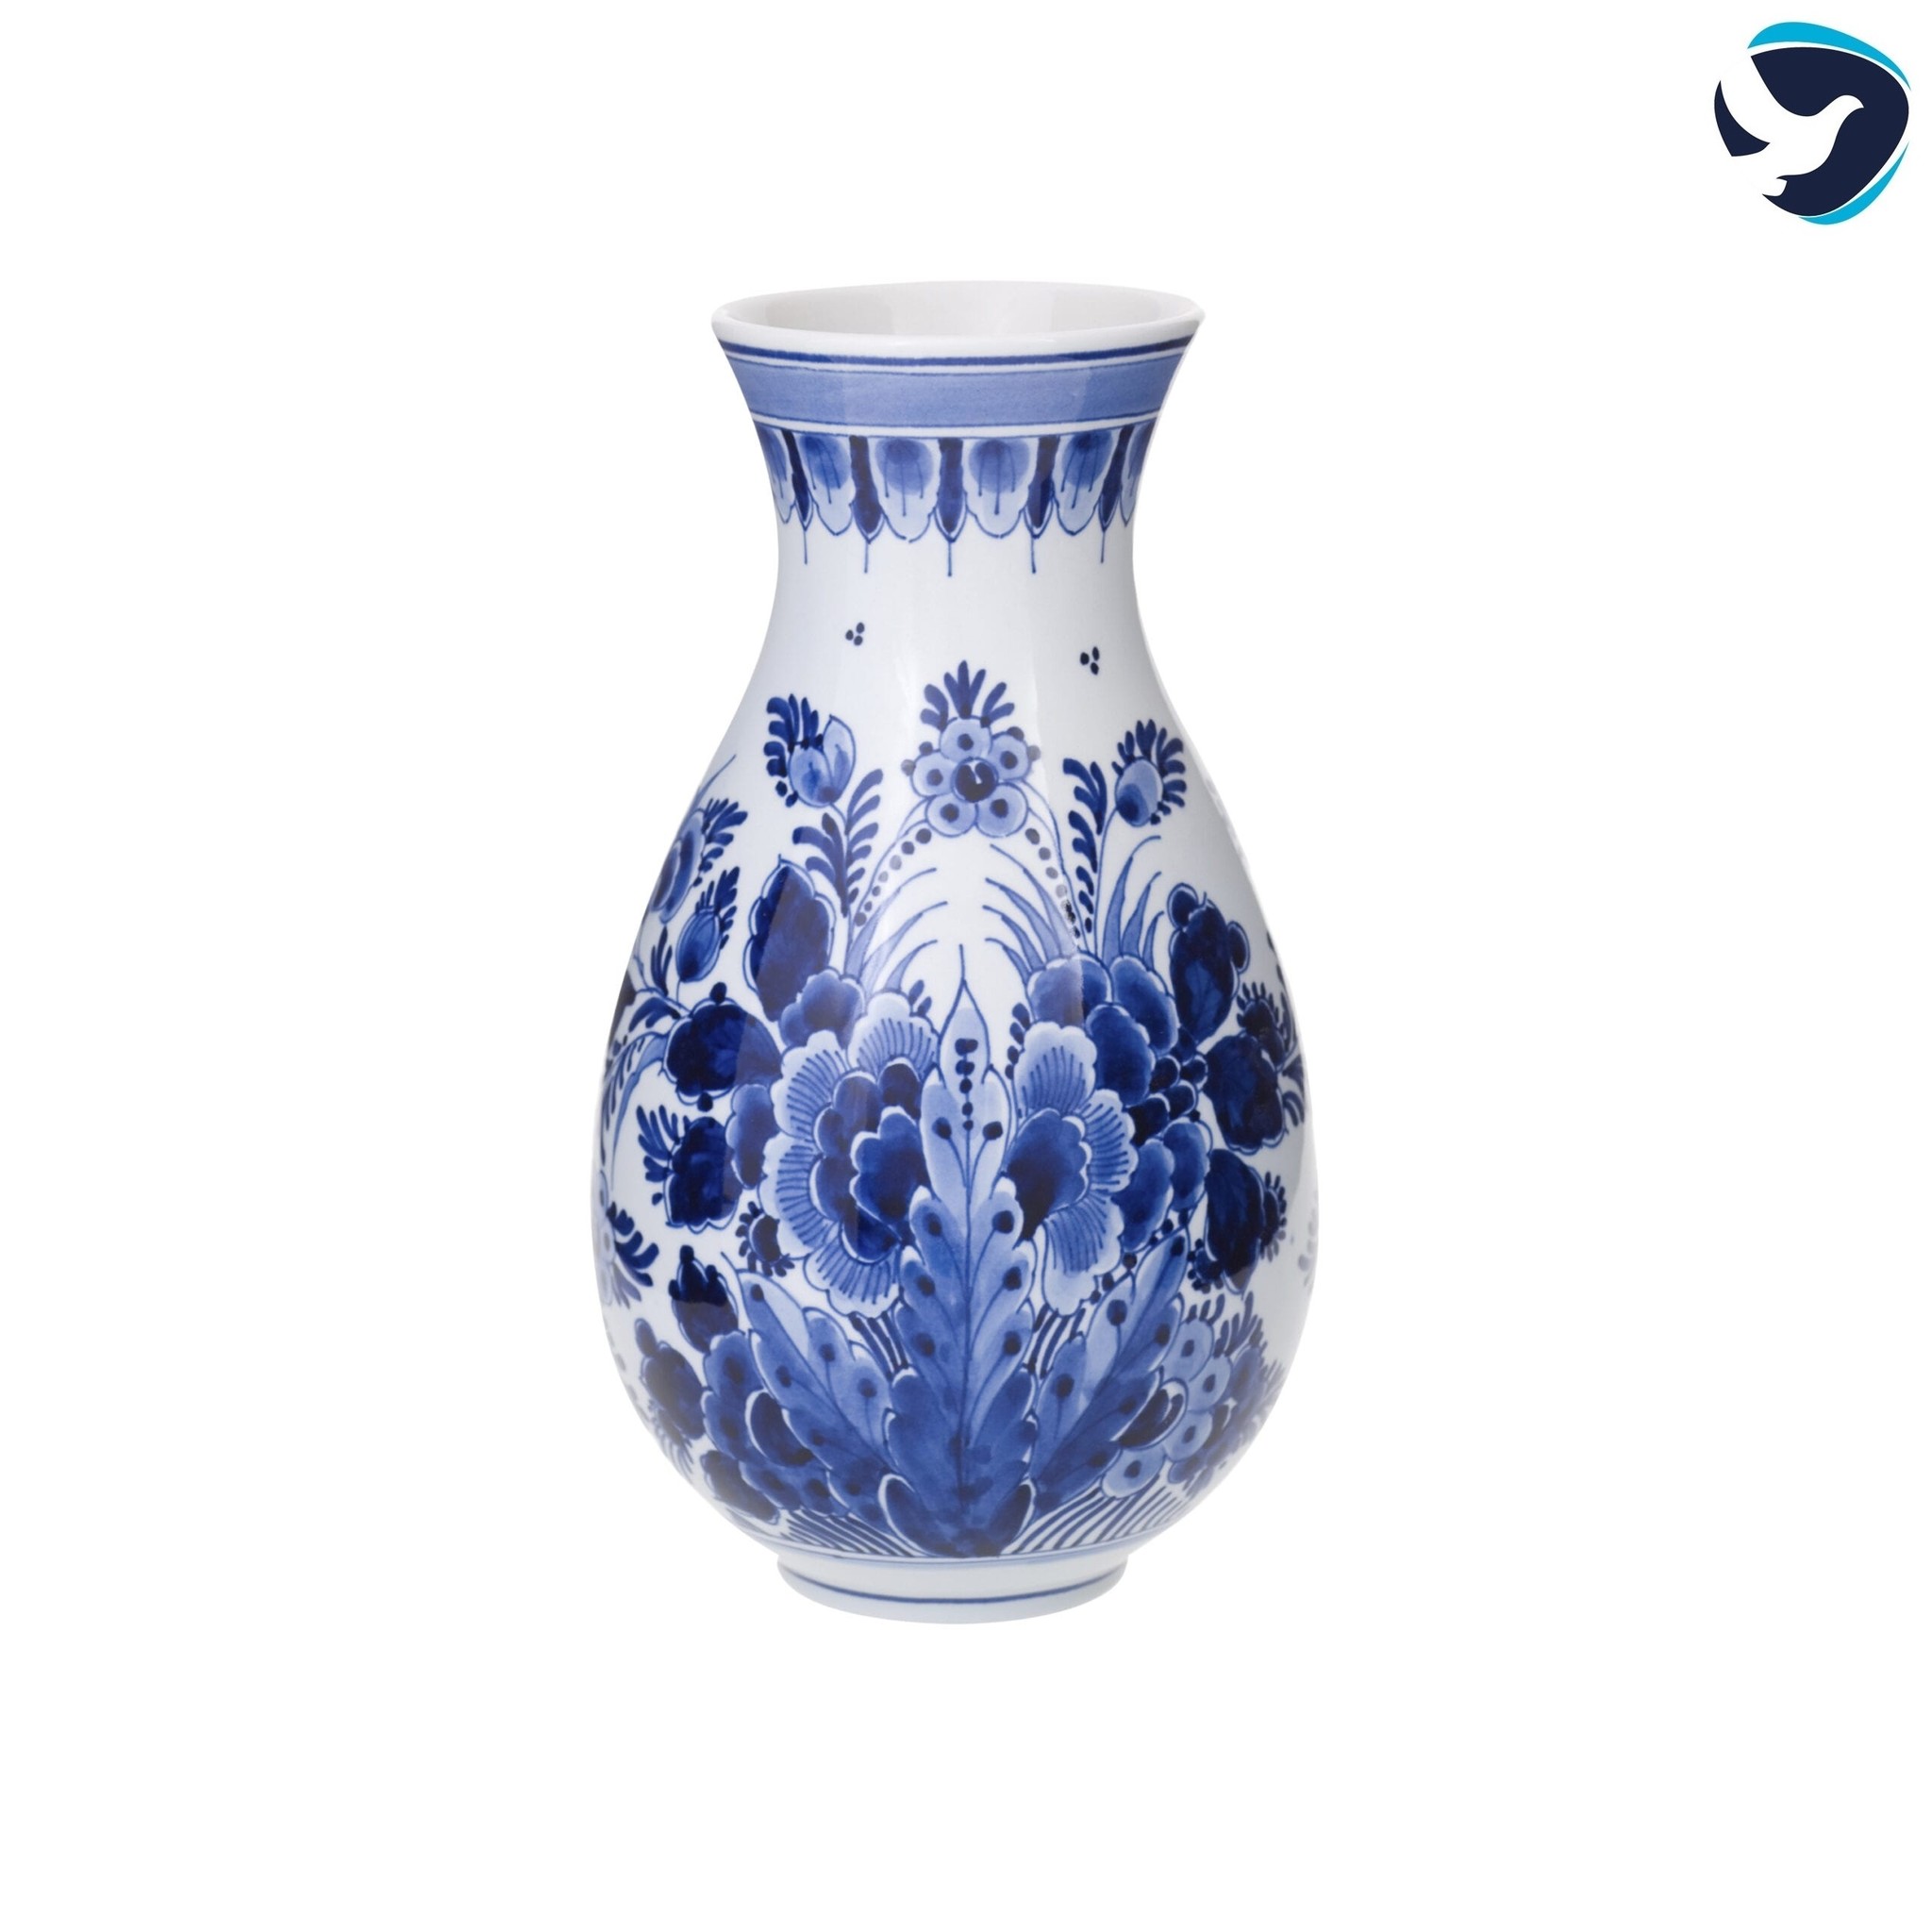 Vaas 'Vase' | Blauw | UitvaartStore.nl UitvaartStore